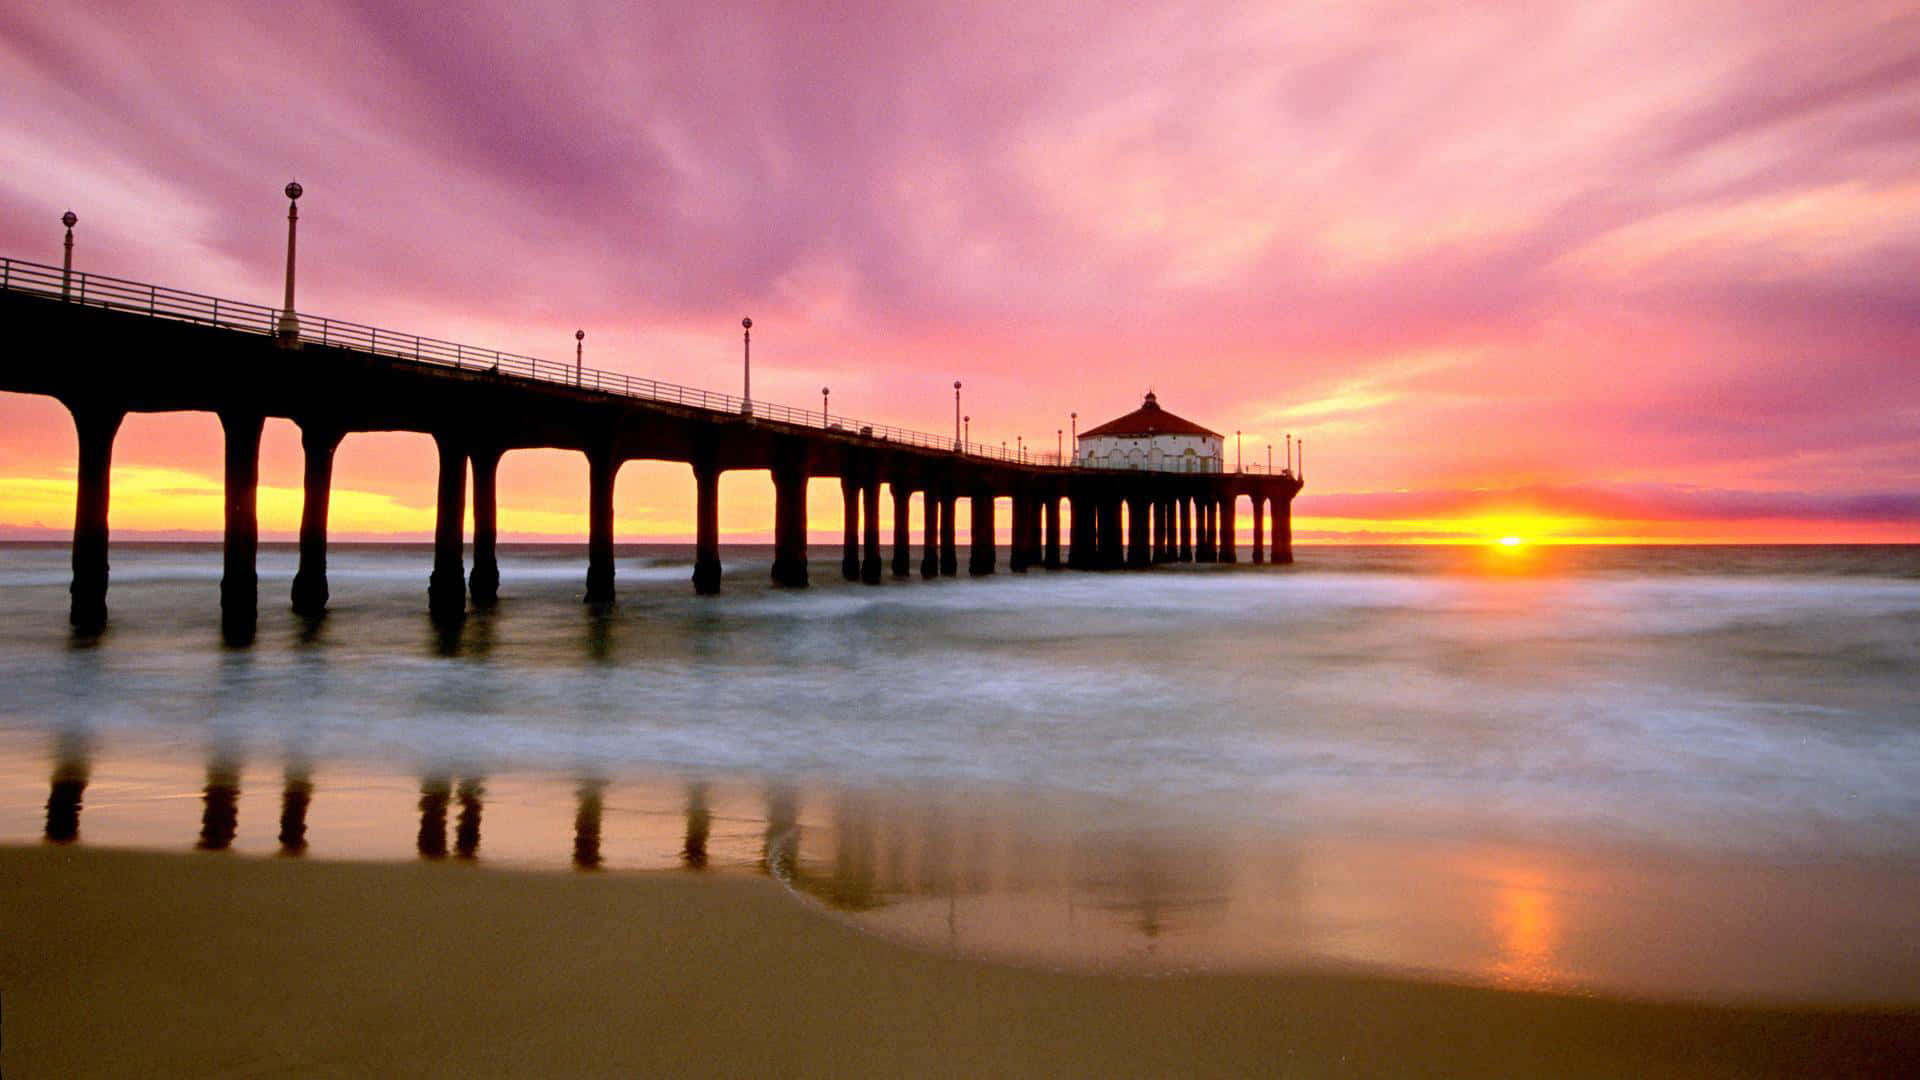 Etsmukt Solnedgangsbillede Af En Strand I Newport Beach, Californien.